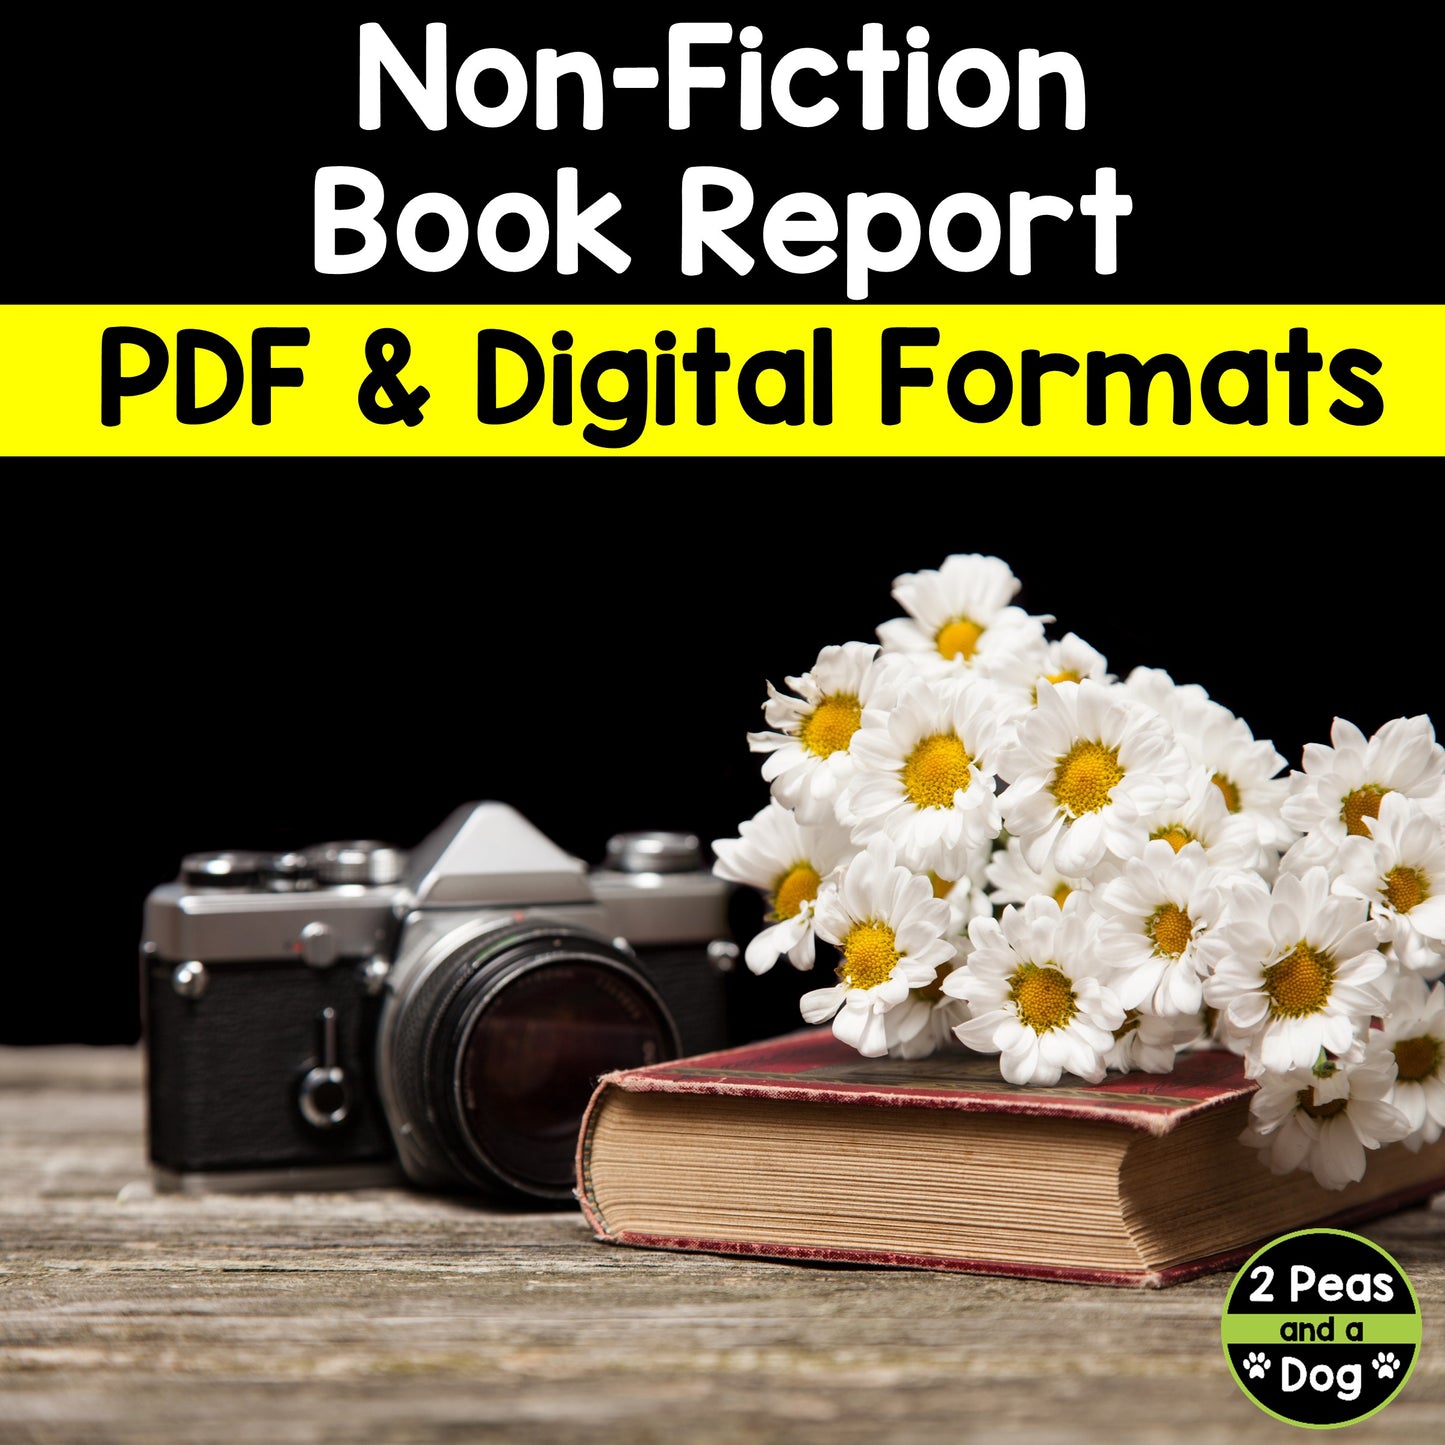 Non-Fiction Book Report